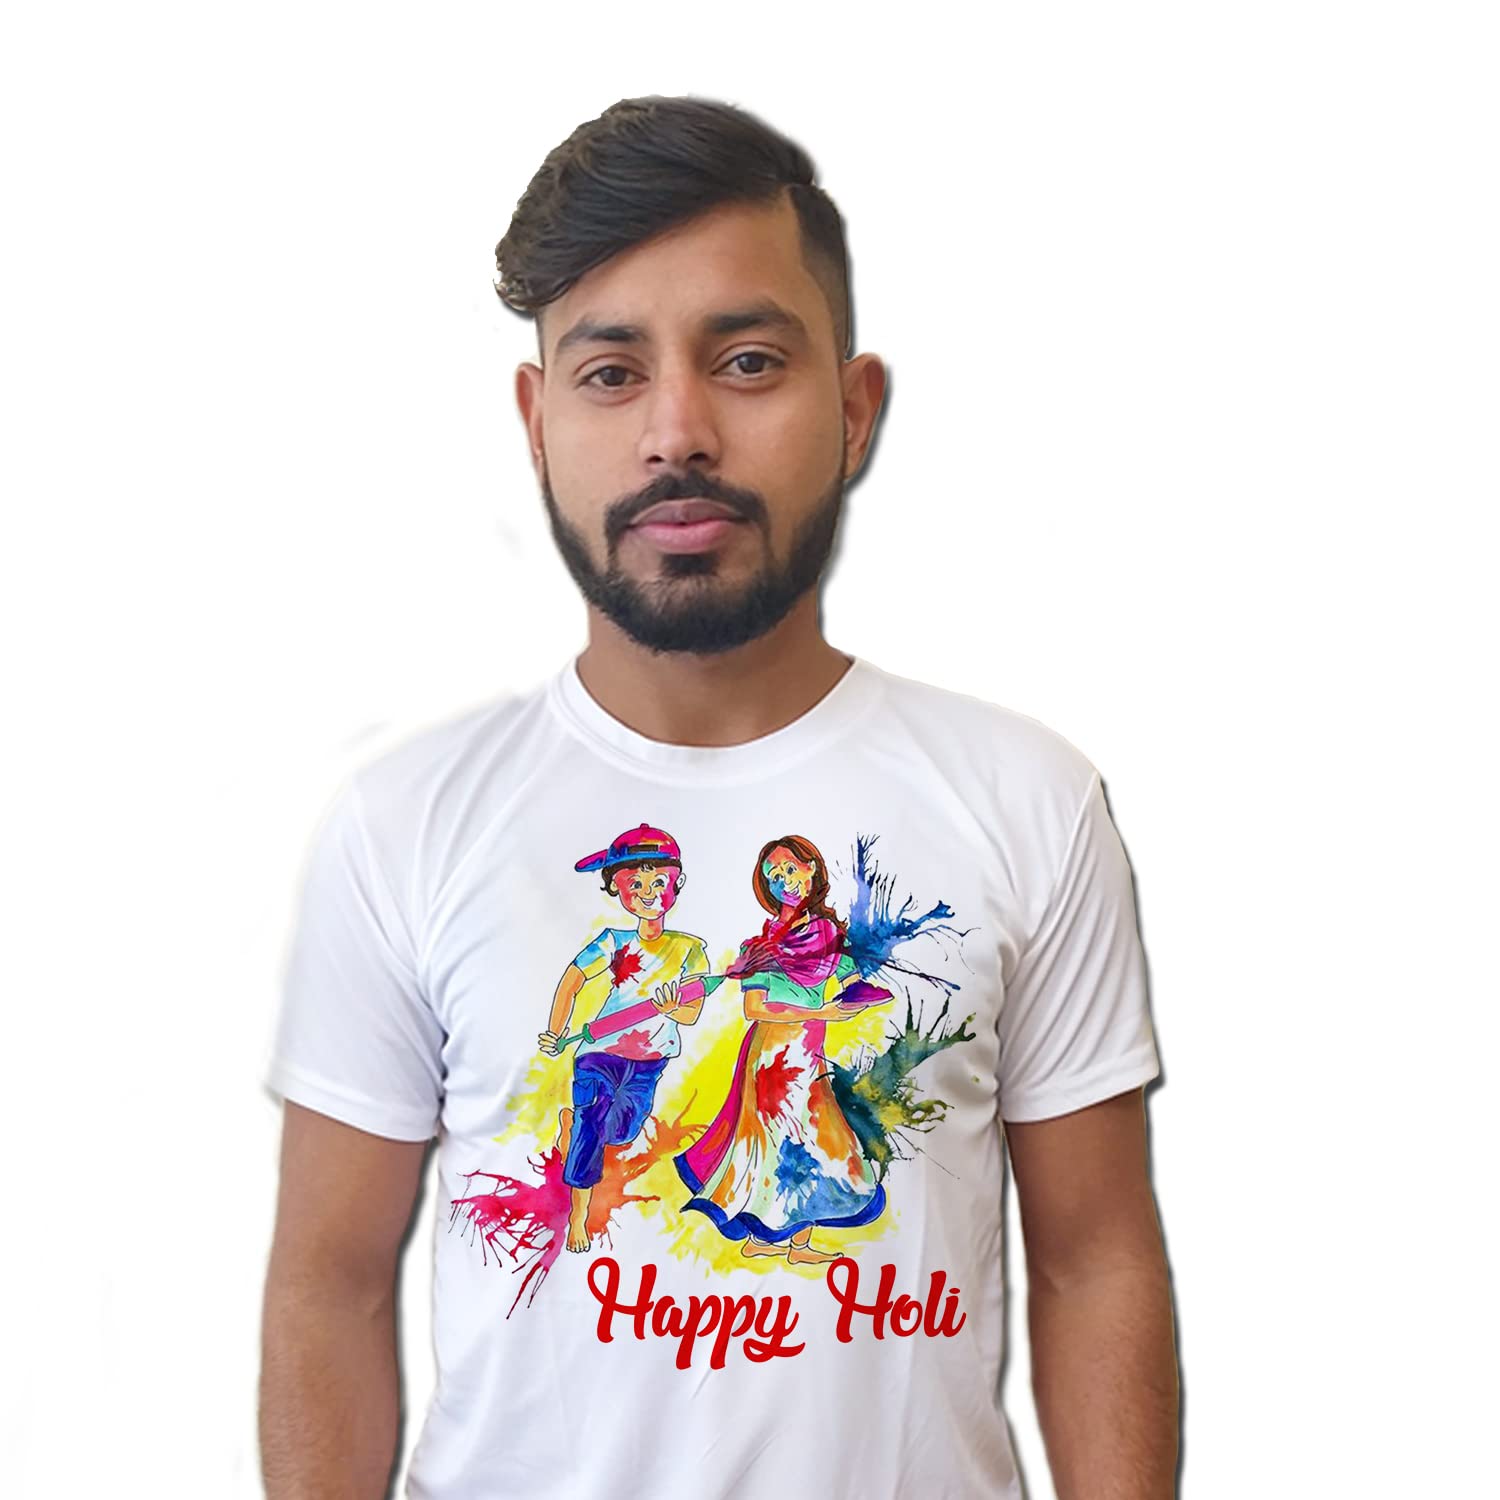 Holi graphic printed - Unisex Tshirt